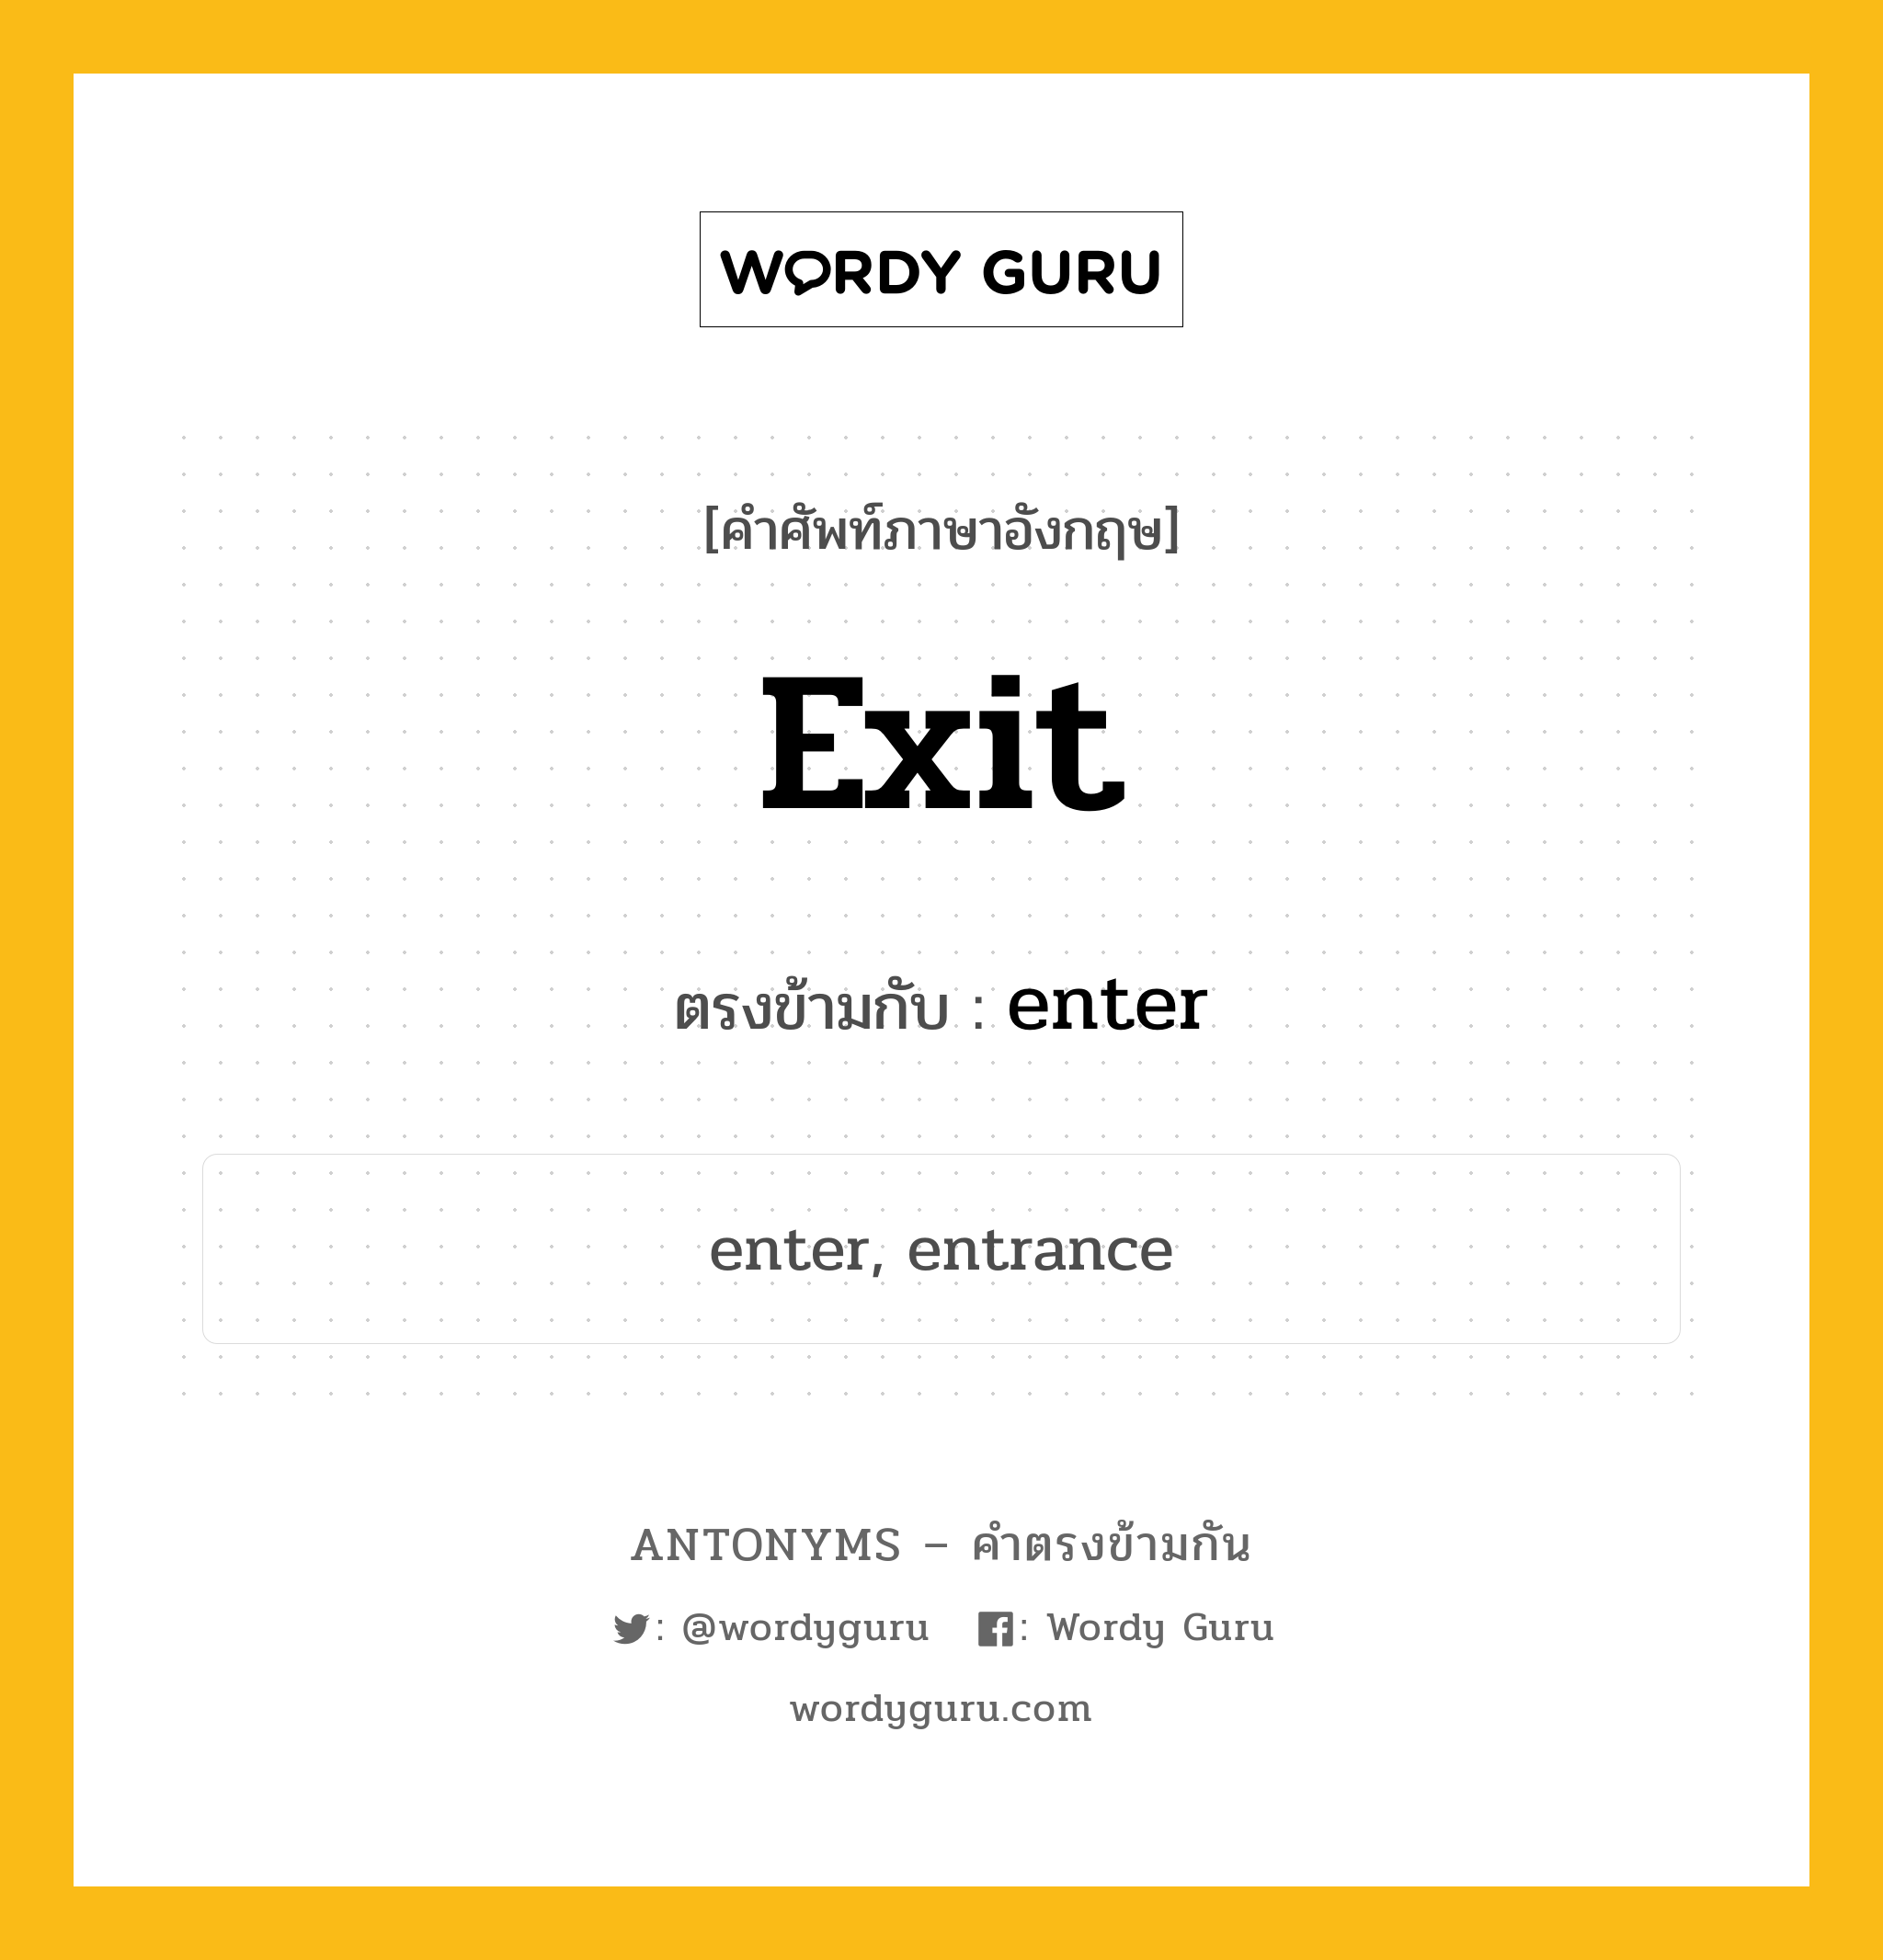 exit เป็นคำตรงข้ามกับคำไหนบ้าง?, คำศัพท์ภาษาอังกฤษ exit ตรงข้ามกับ enter หมวด enter